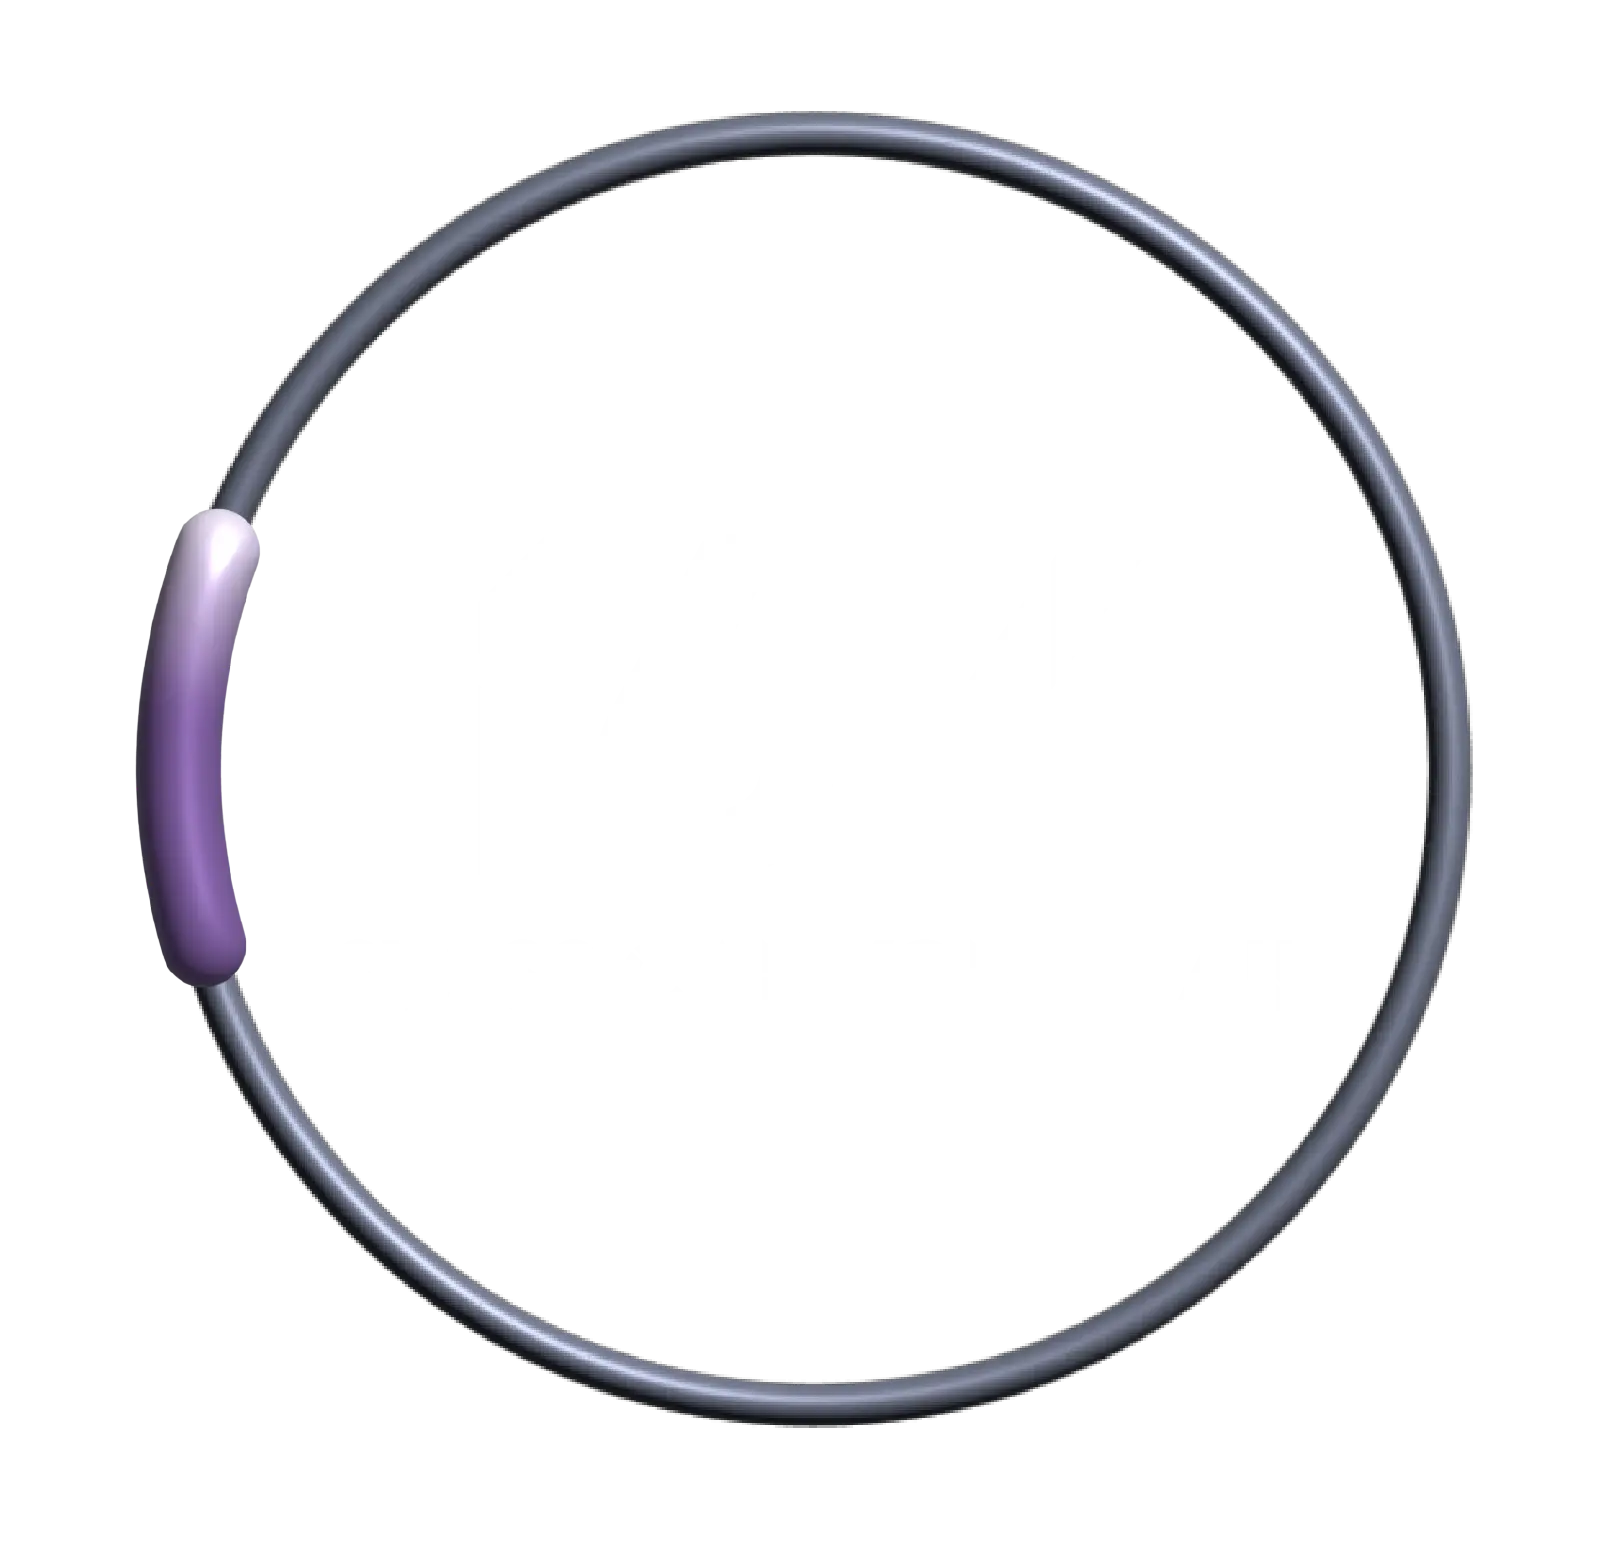 Swiss Canyon Trail 16K course logo